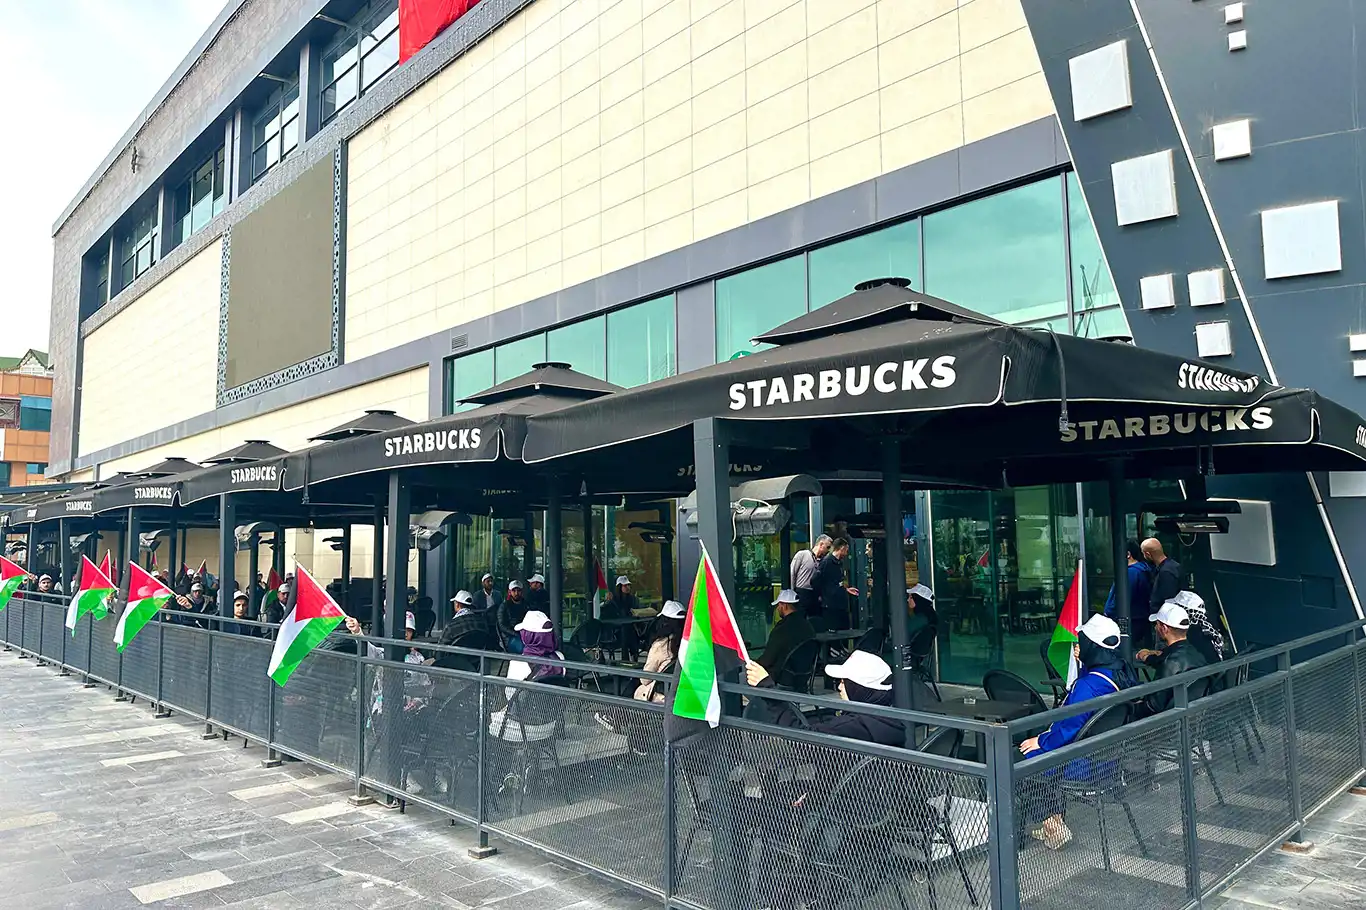 Siyonist işgal rejimine destek veren Starbucks gençler tarafından protesto edildi